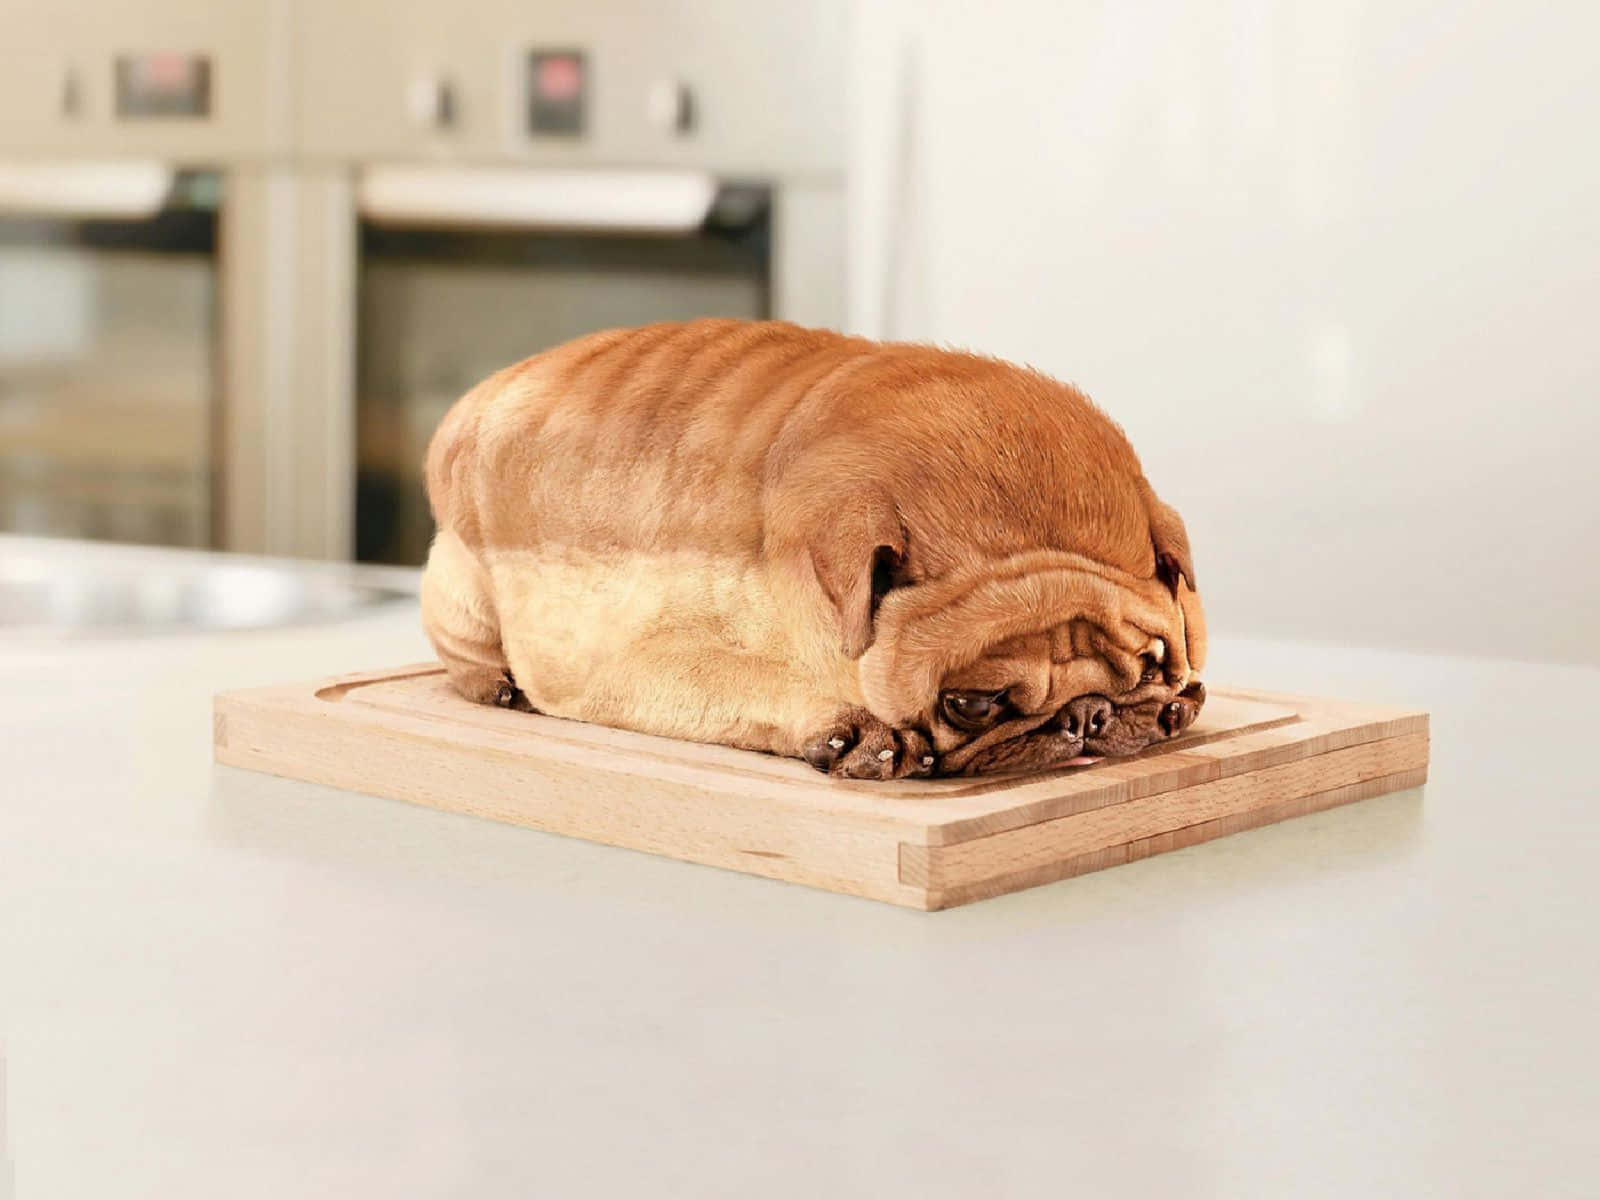 Lustigerhund In Form Eines Laibs Brot. Wallpaper